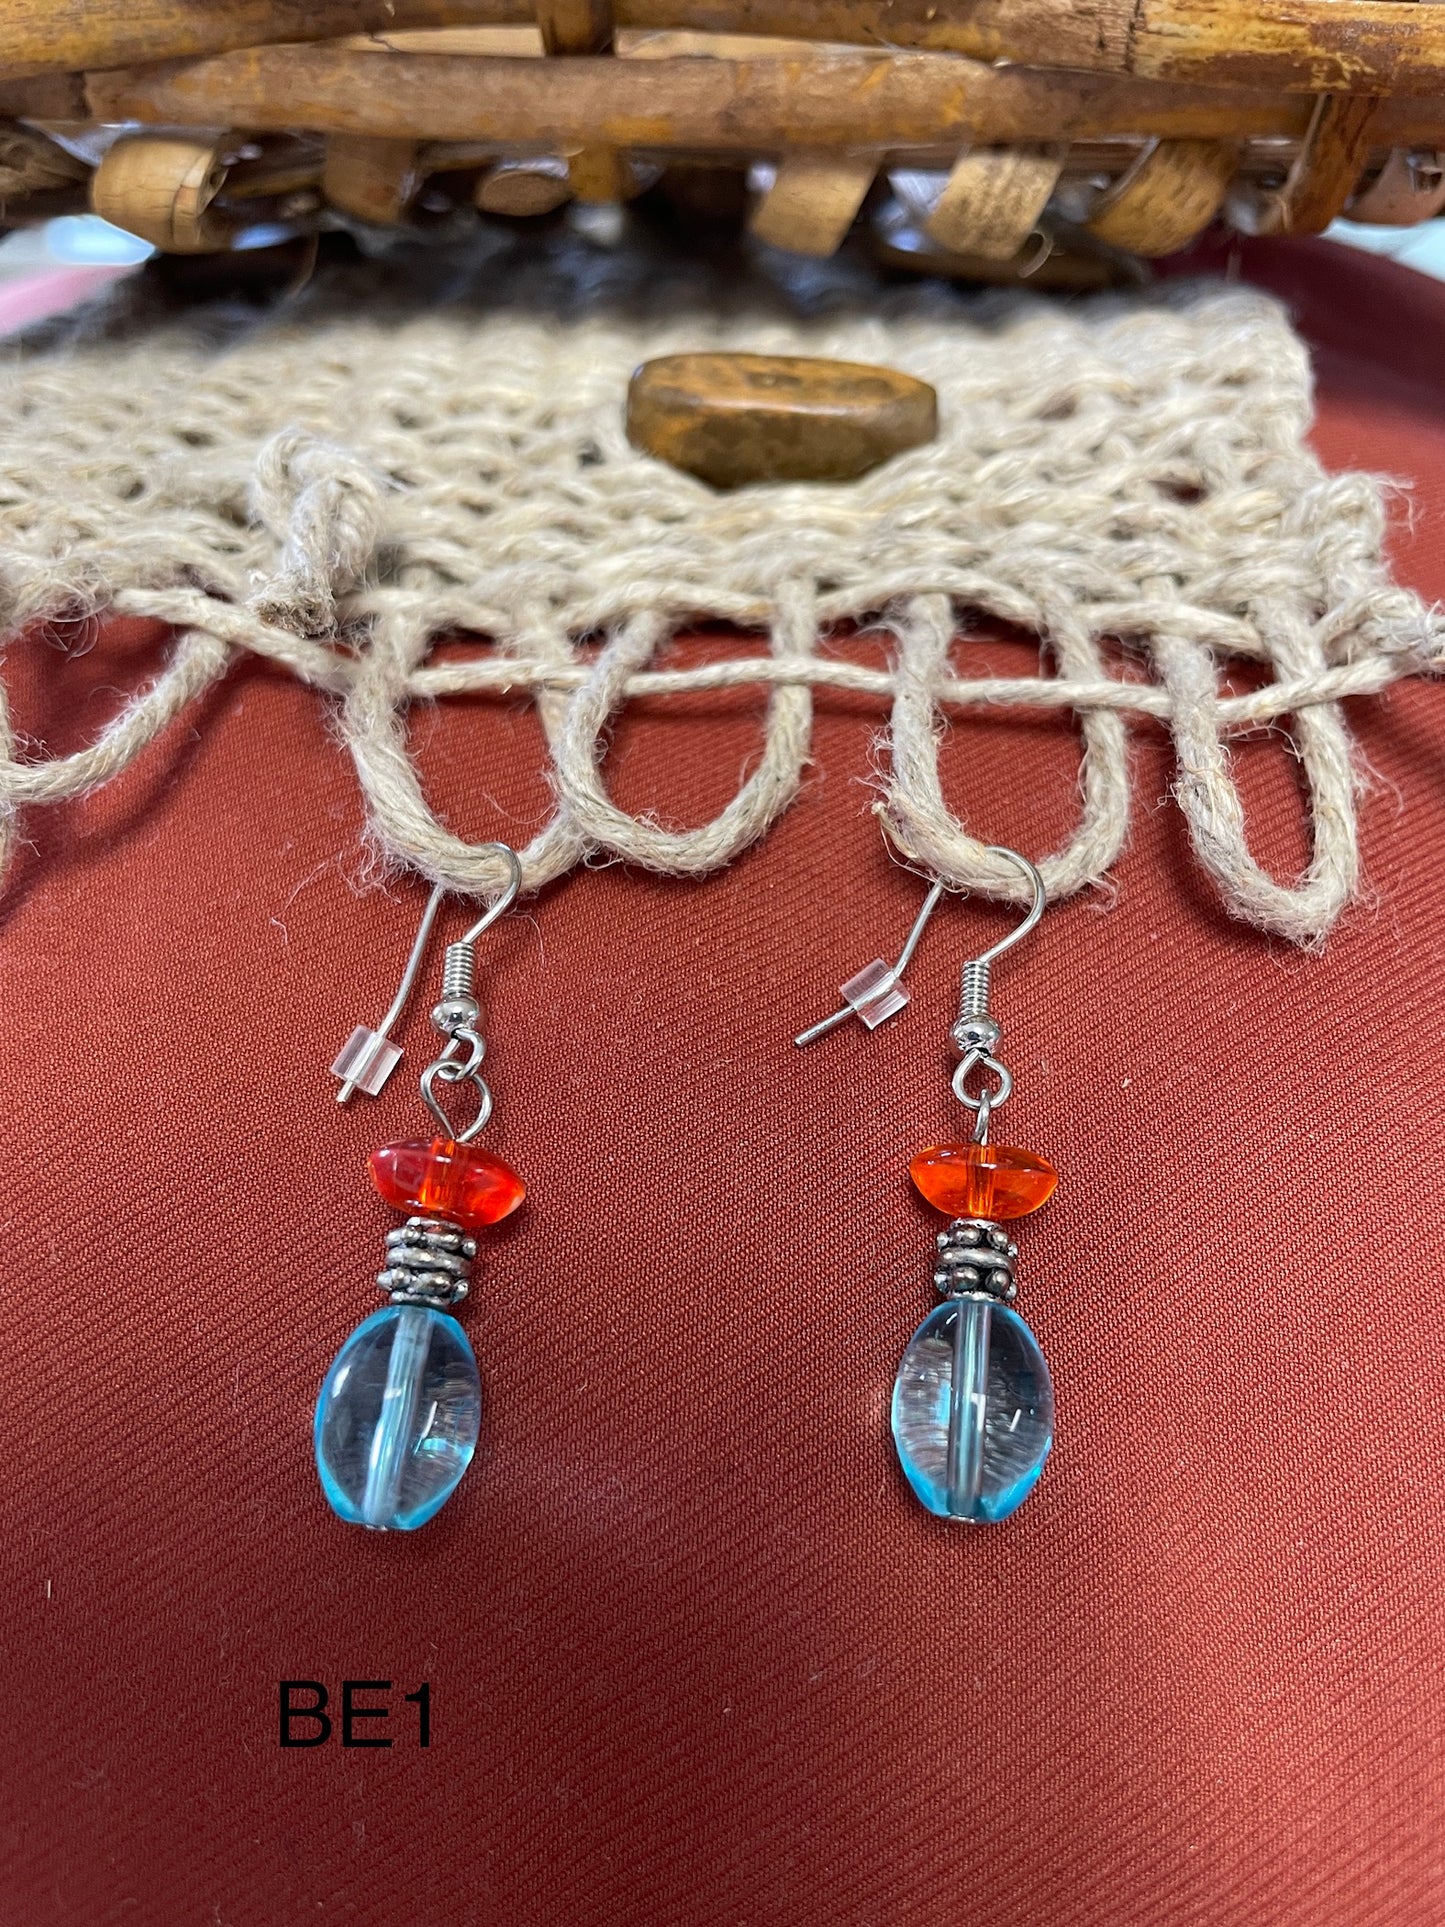 Blue/Orange & metal bead earrings BE1